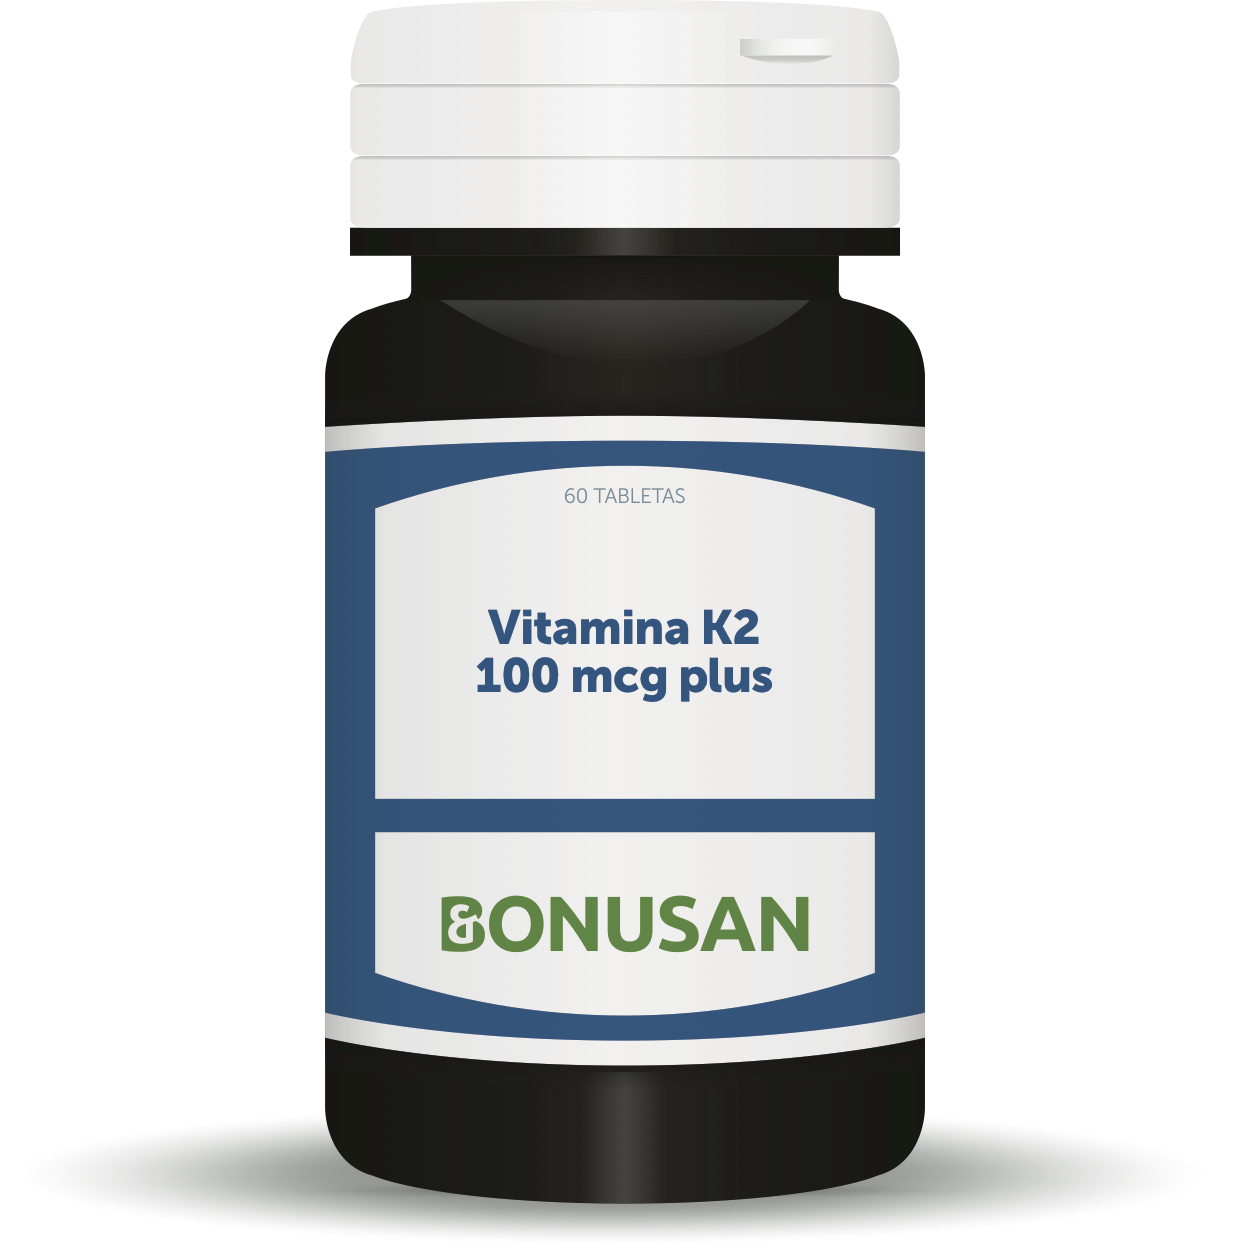 Bonusan Vitamina K2 100 mcg plus, 60 tabletas. Con vitamina D.